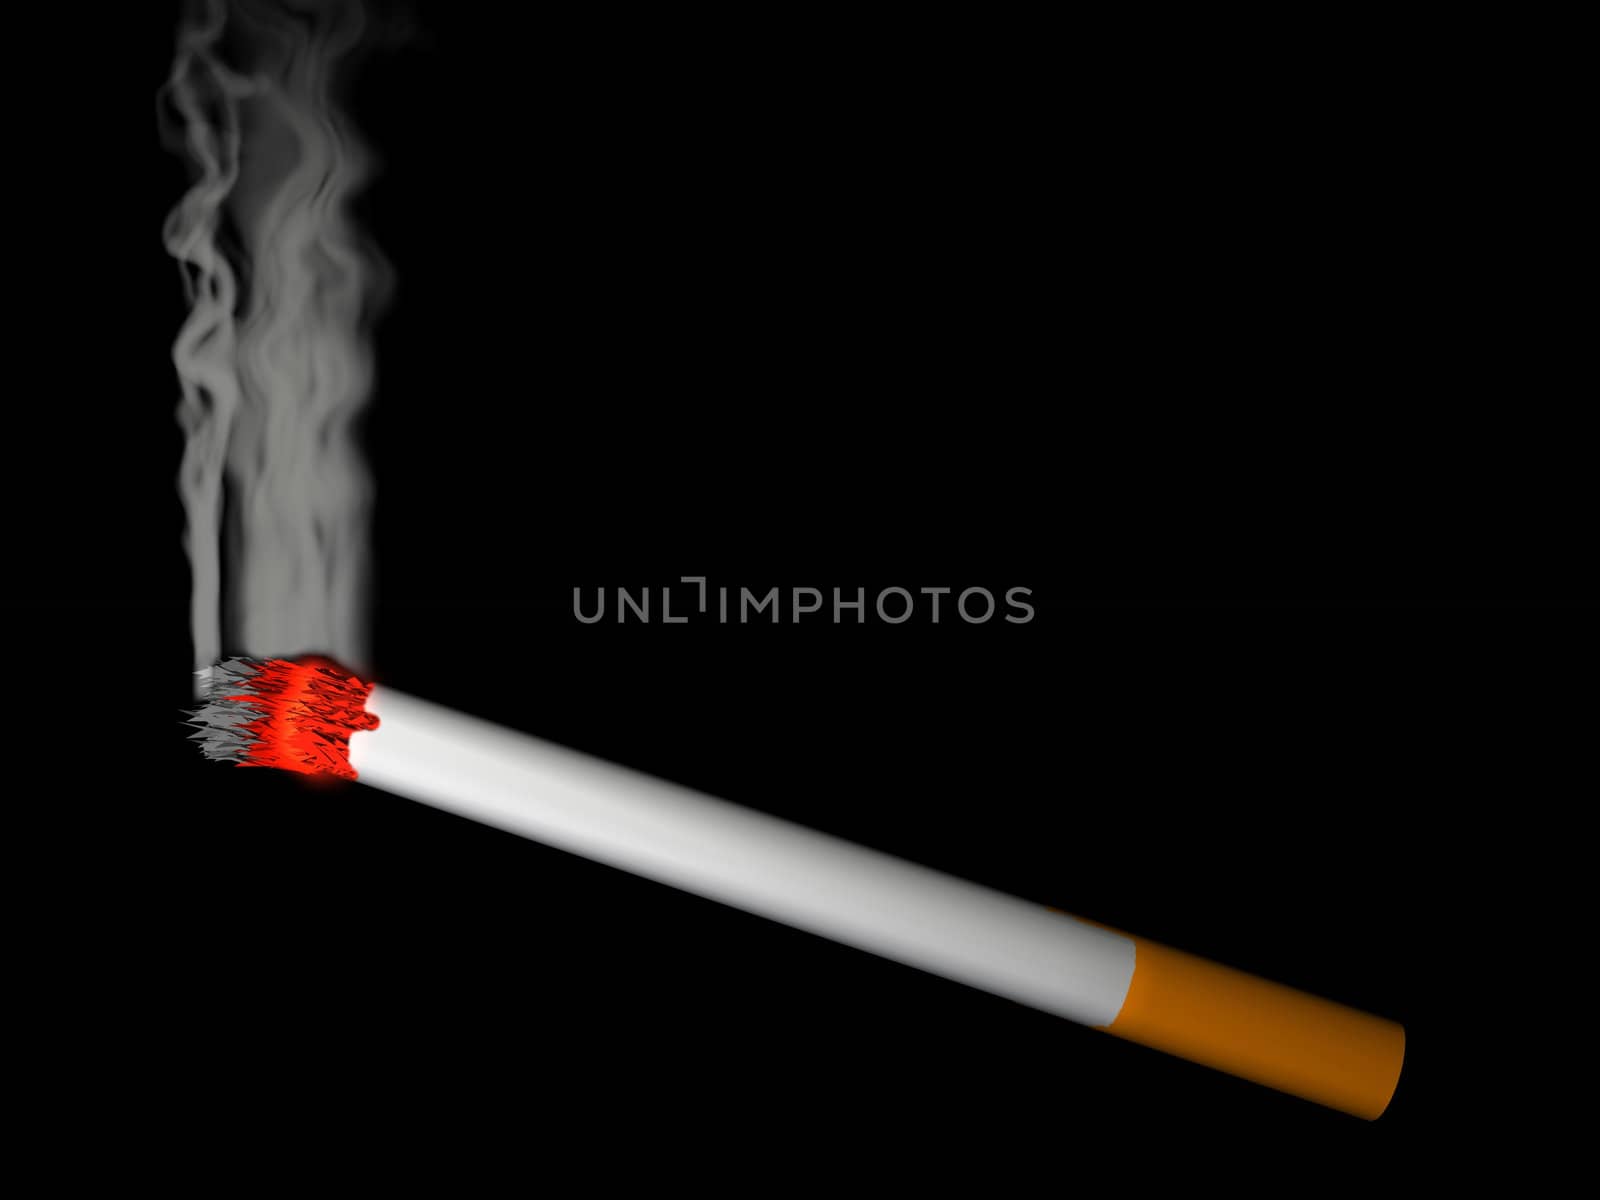 the white cigarette  smokes